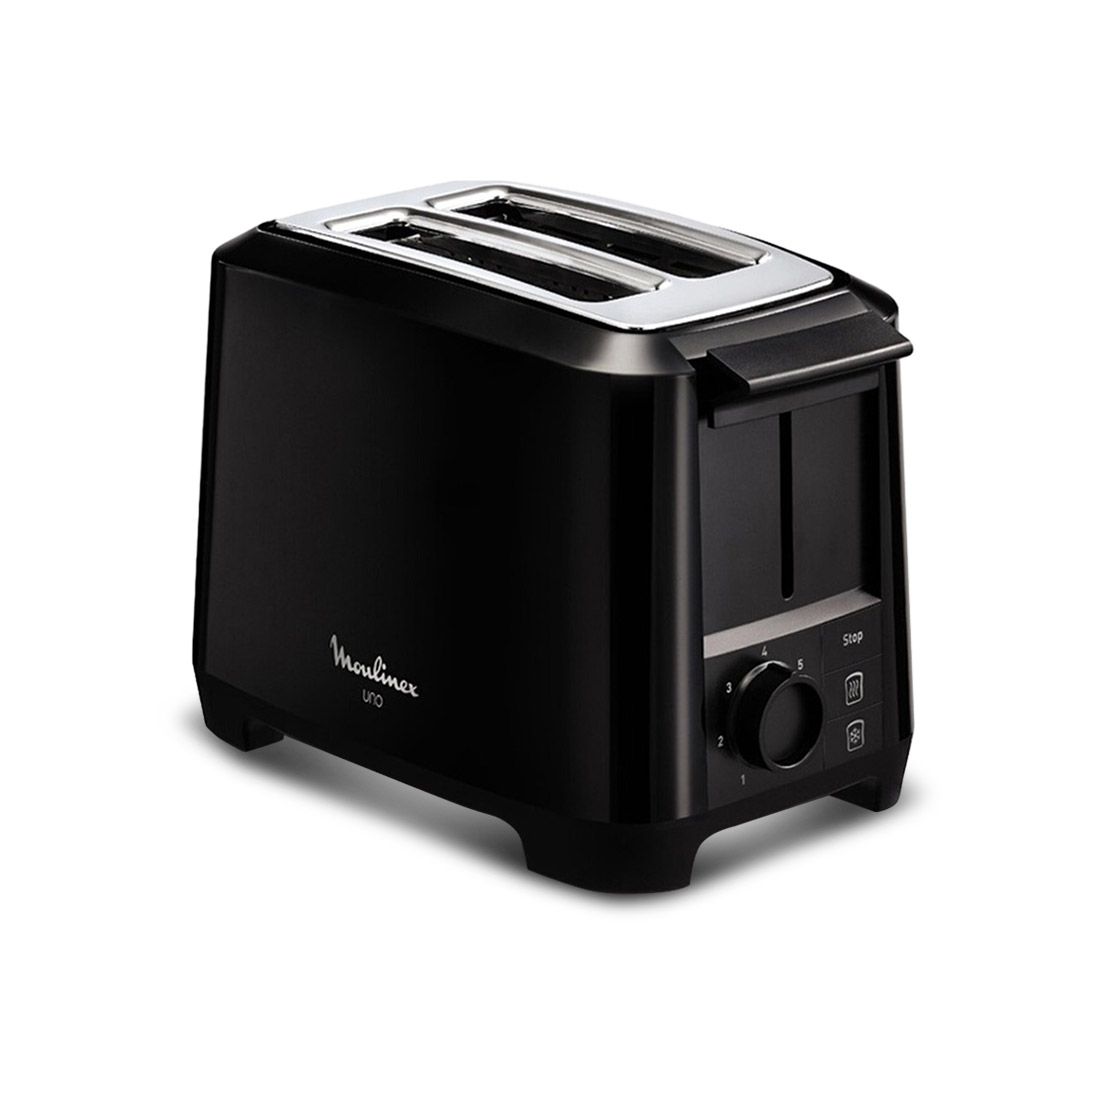 Moulinex 2 Slice Bread Toaster, 800W (Black)
                Moulinex 2 Slice Bread Toaster, 800W (Black)